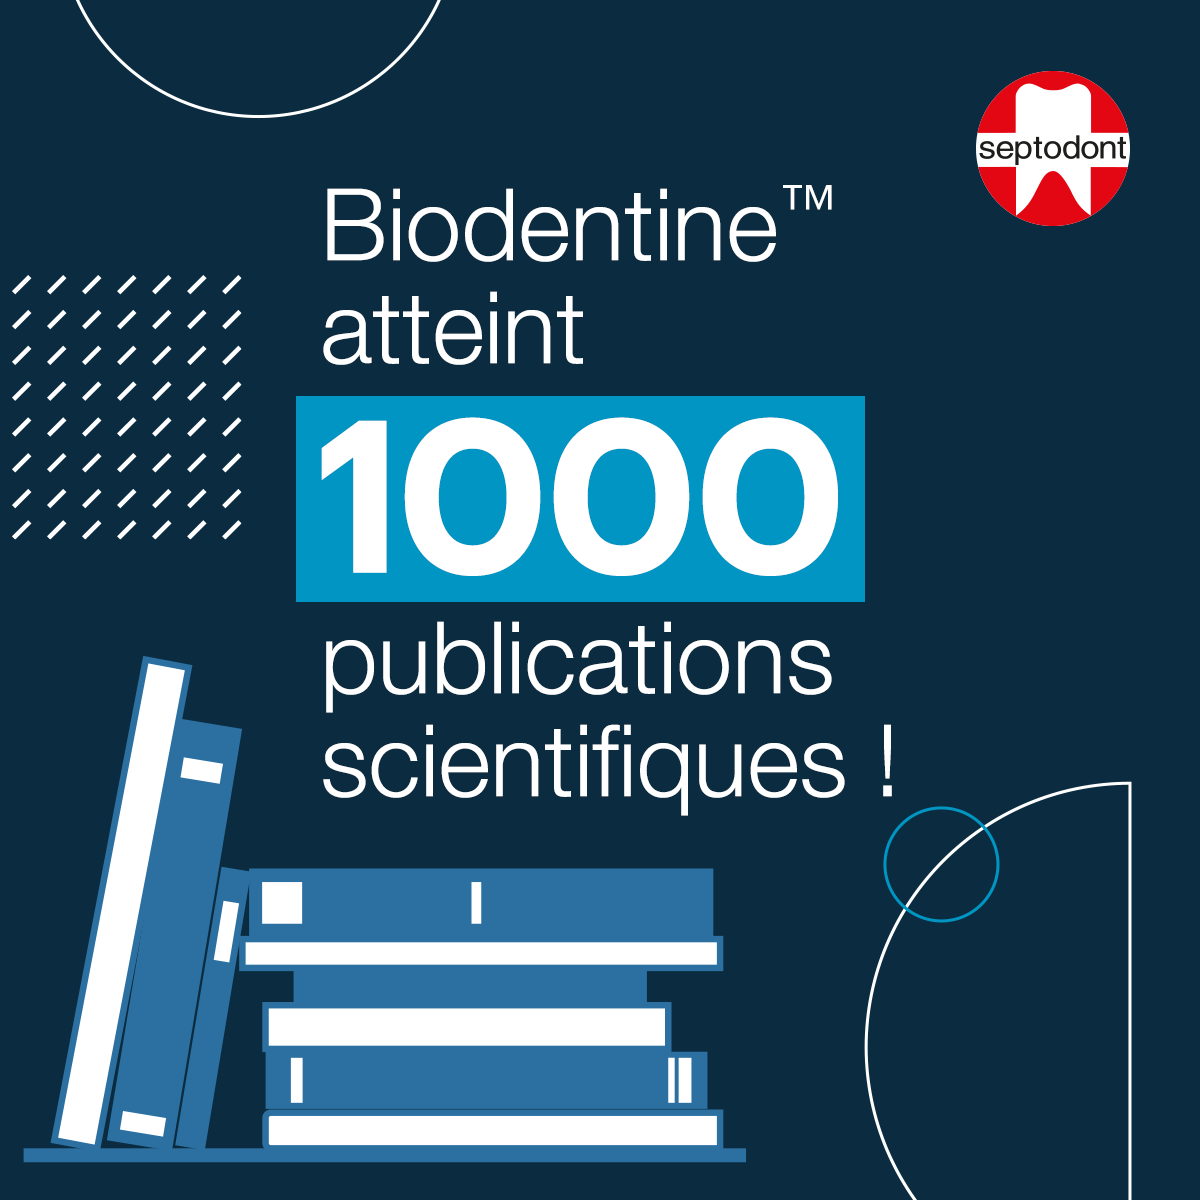 Biodentine franchit une nouvelle étape avec 1000 publications scientifiques !